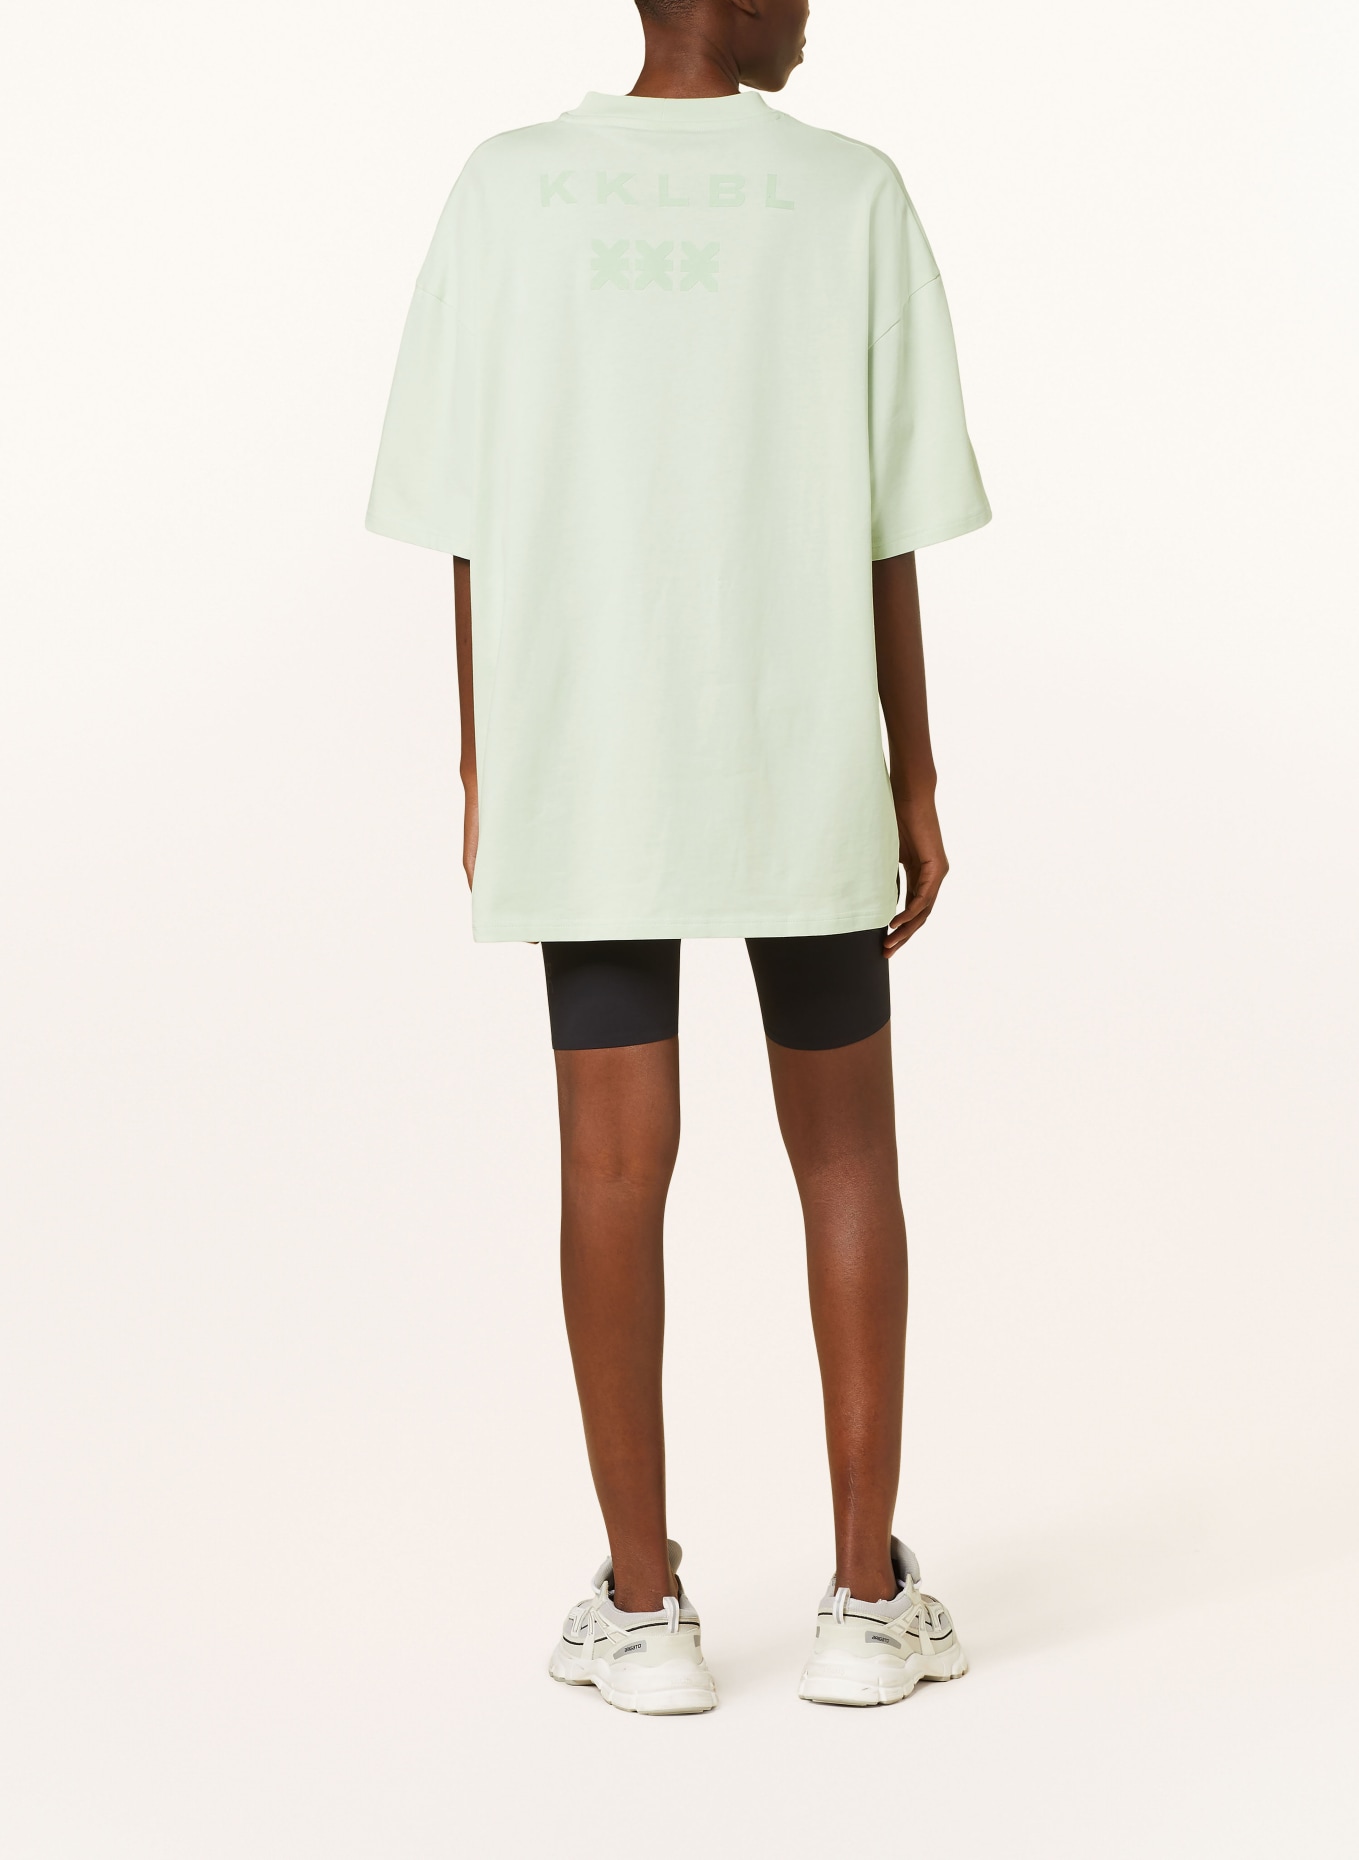 KARO KAUER Oversized shirt, Color: MINT (Image 3)